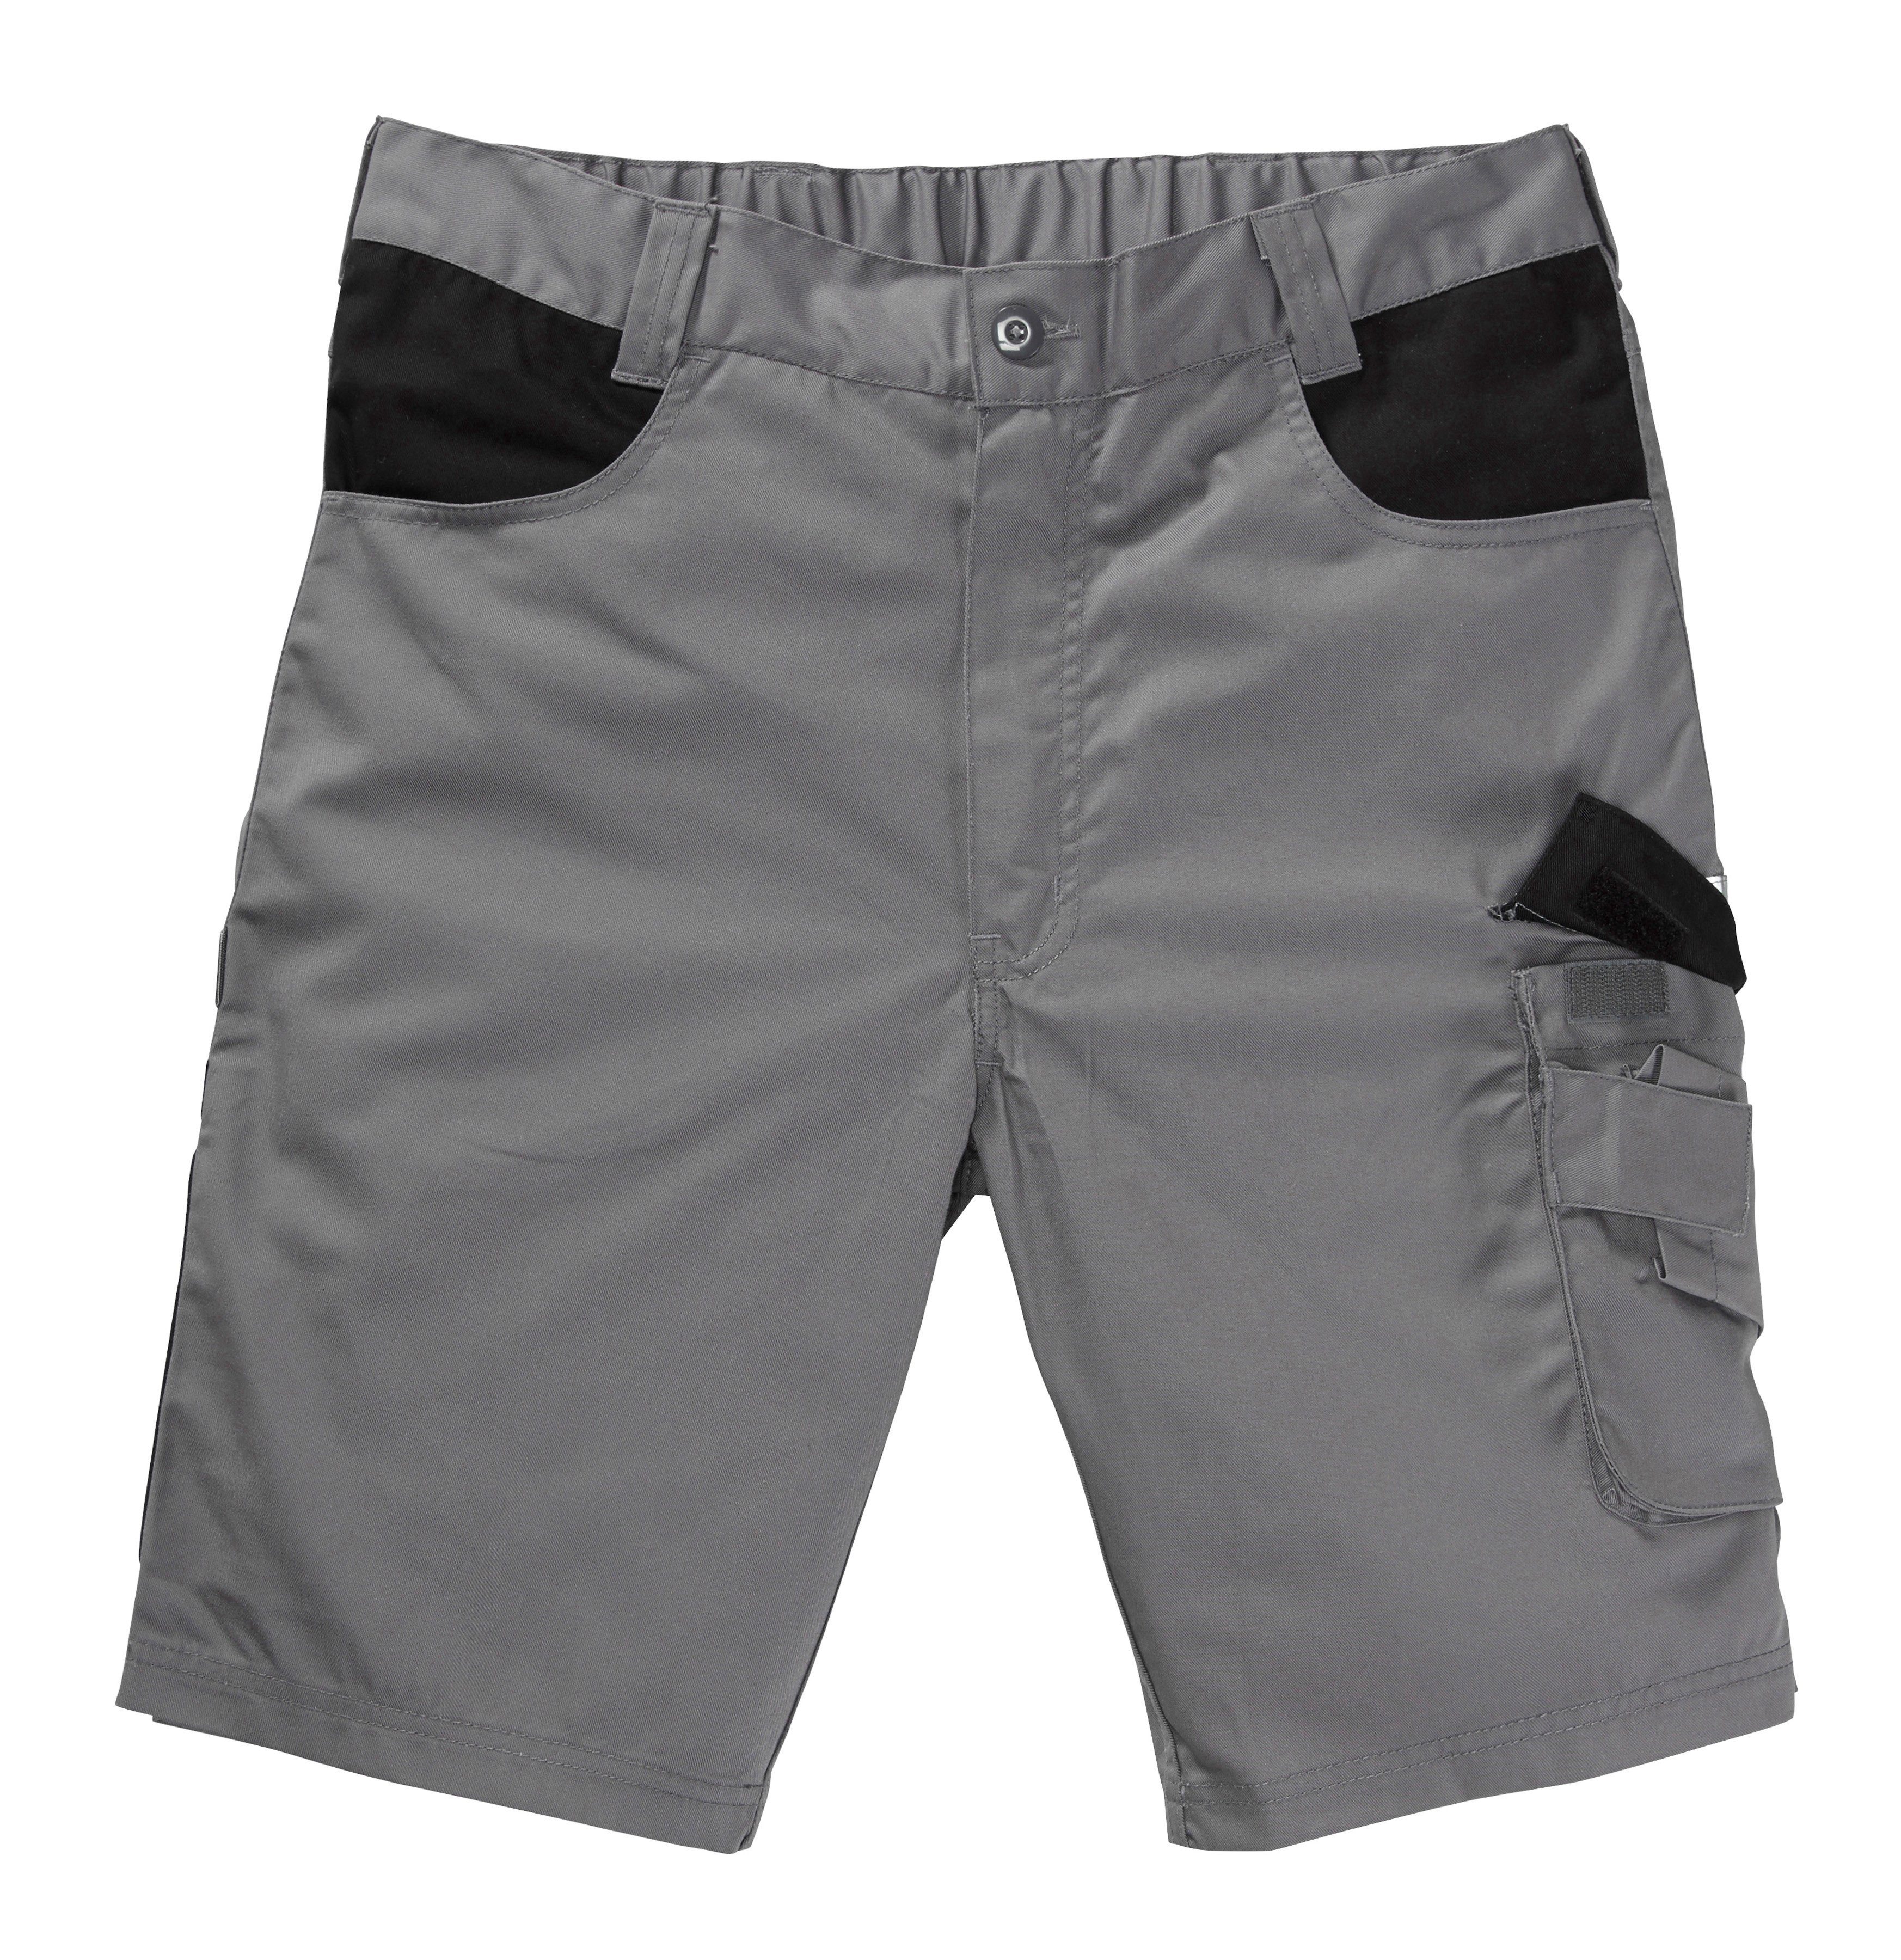 safety& more Arbeitsshorts Pull mar mit Reflexeinsatz grau-schwarz | Shorts